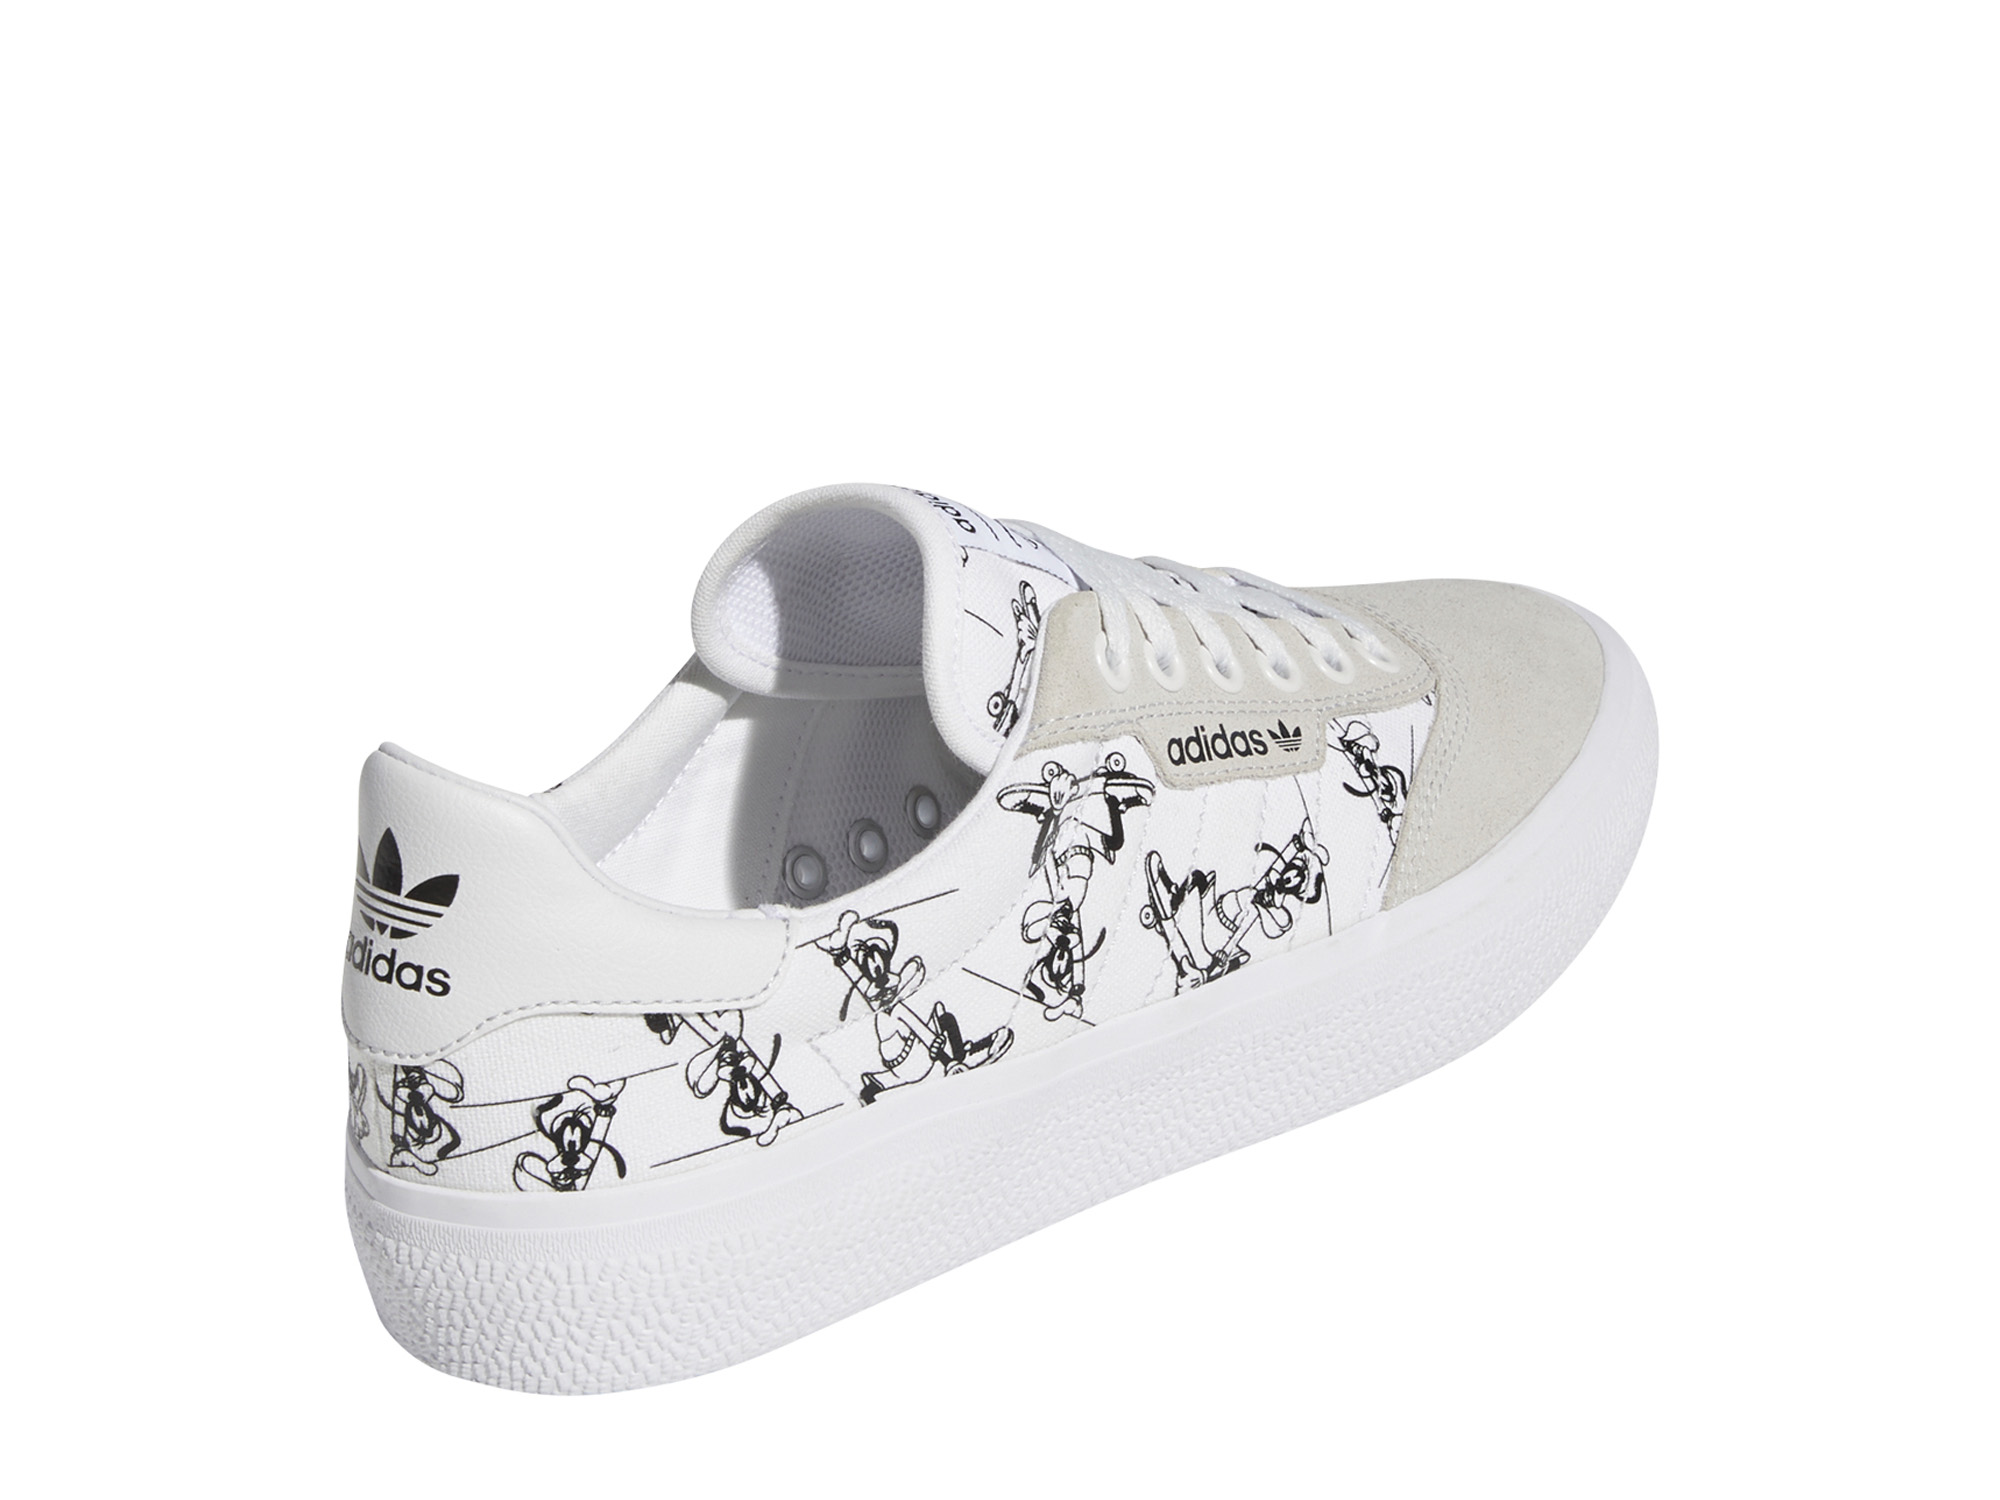 Adidas Originals 3MC X Disney Sport Goofy Herren Sneaker